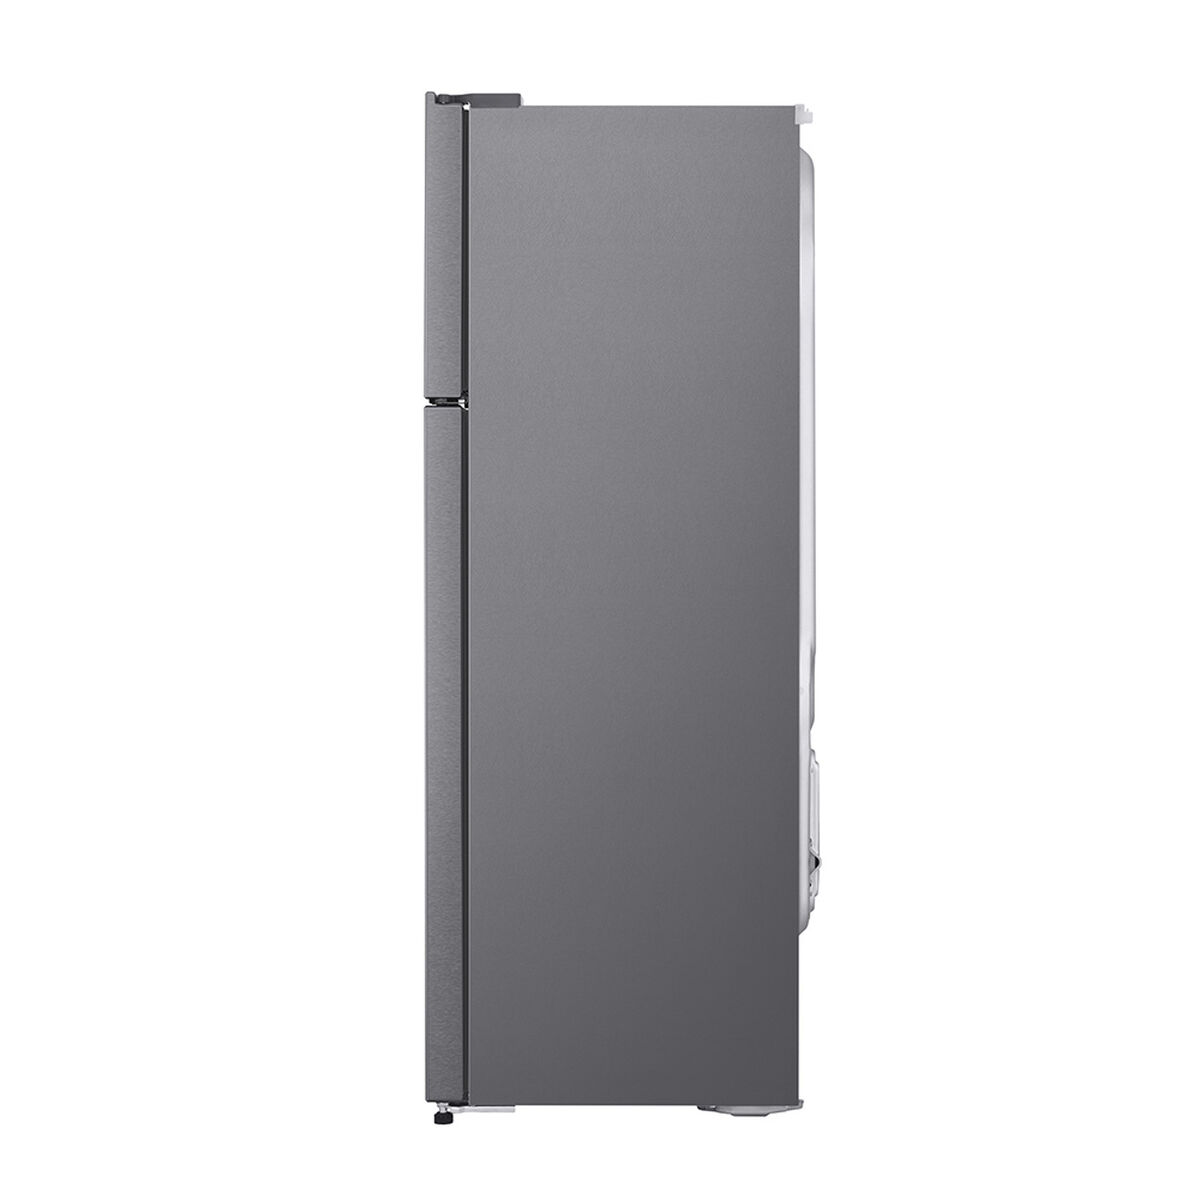 Refrigerador No Frost LG GT29BPPK 254 lts.